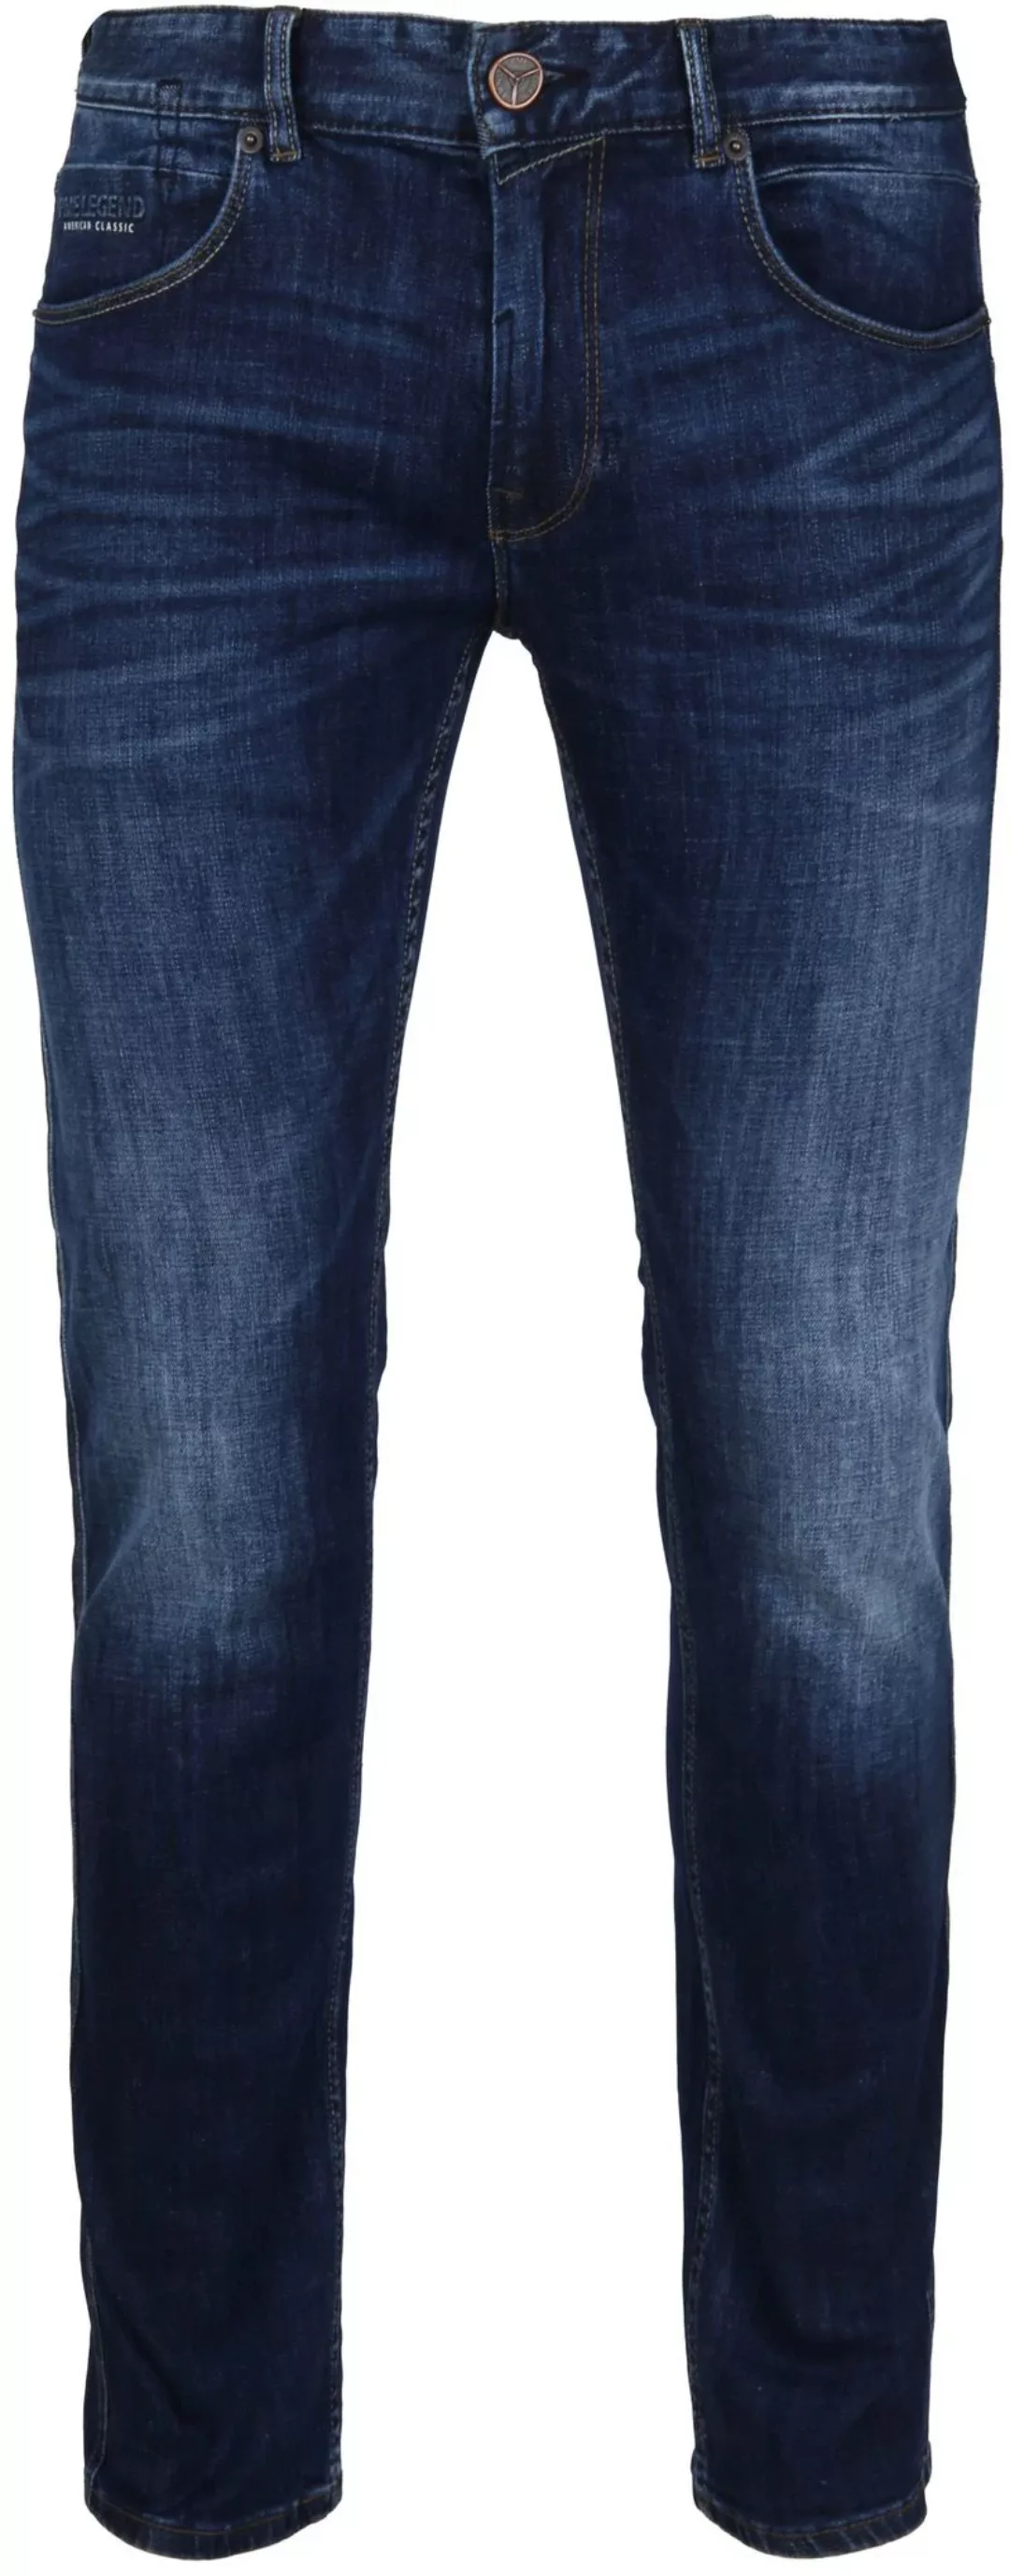 PME Legend Nightflight Jeans Dunkelblau - Größe W 34 - L 34 günstig online kaufen